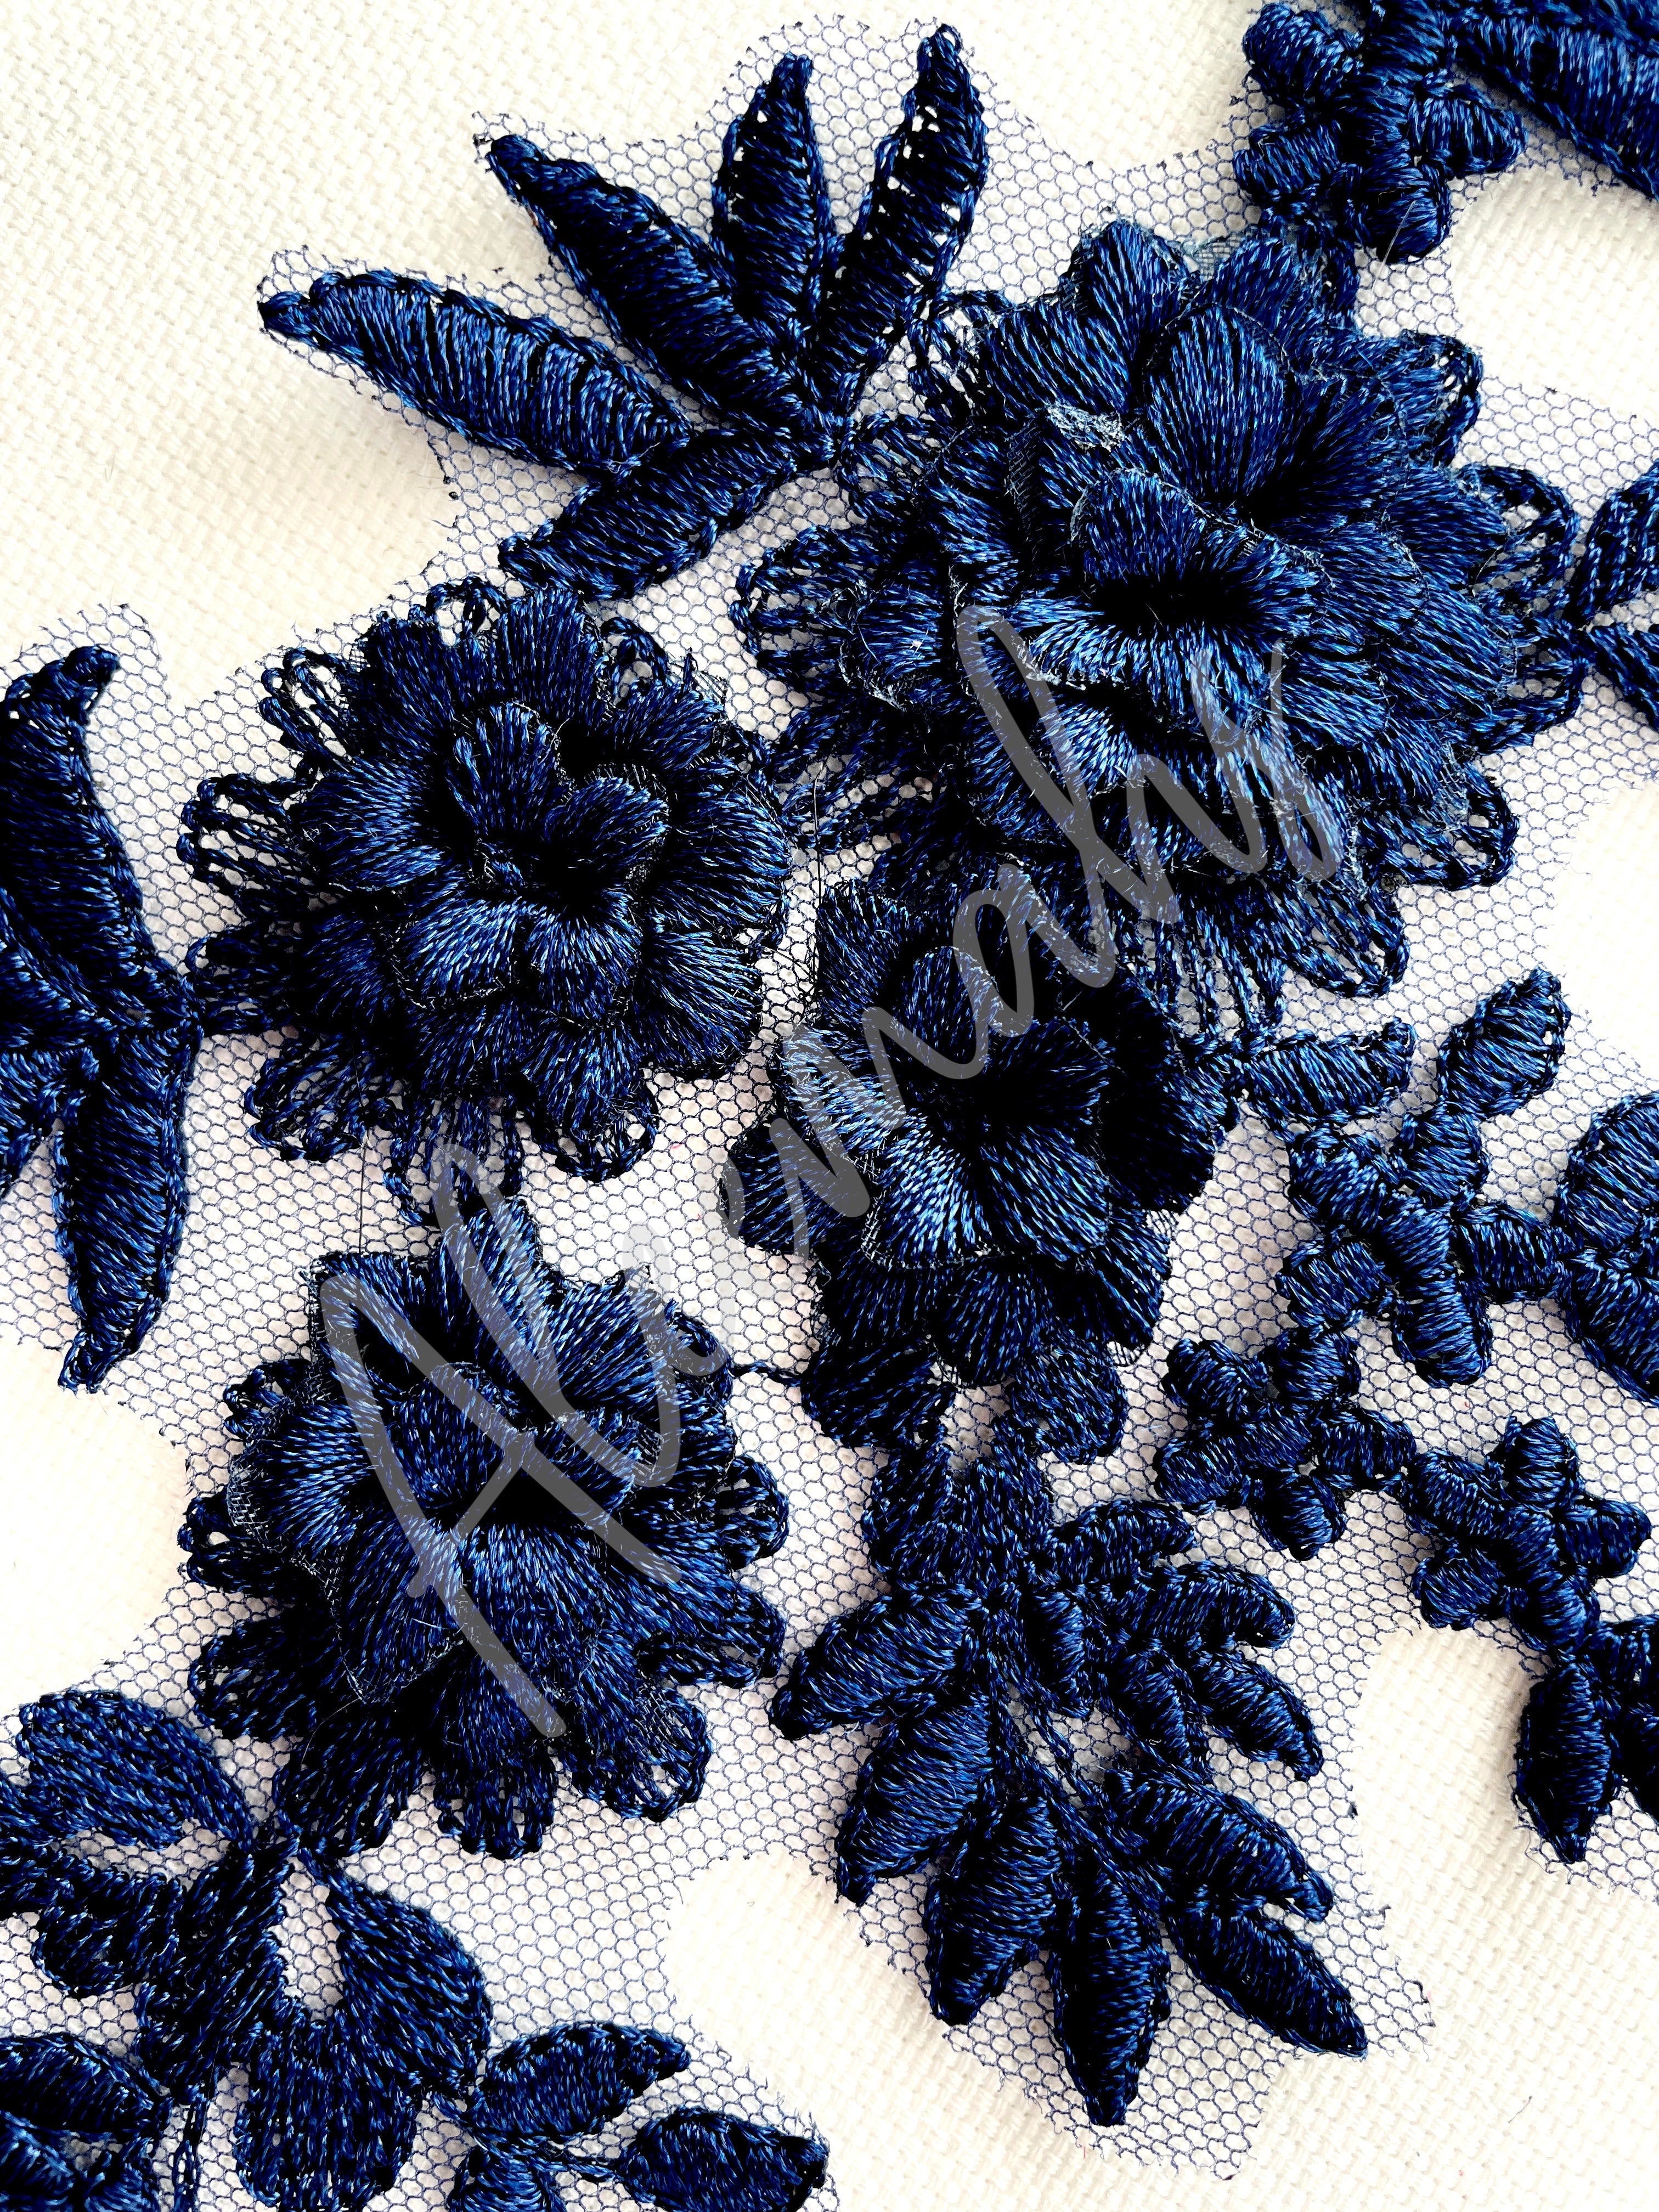 LA-033: 3D floral lace applique pair: Navy Blue